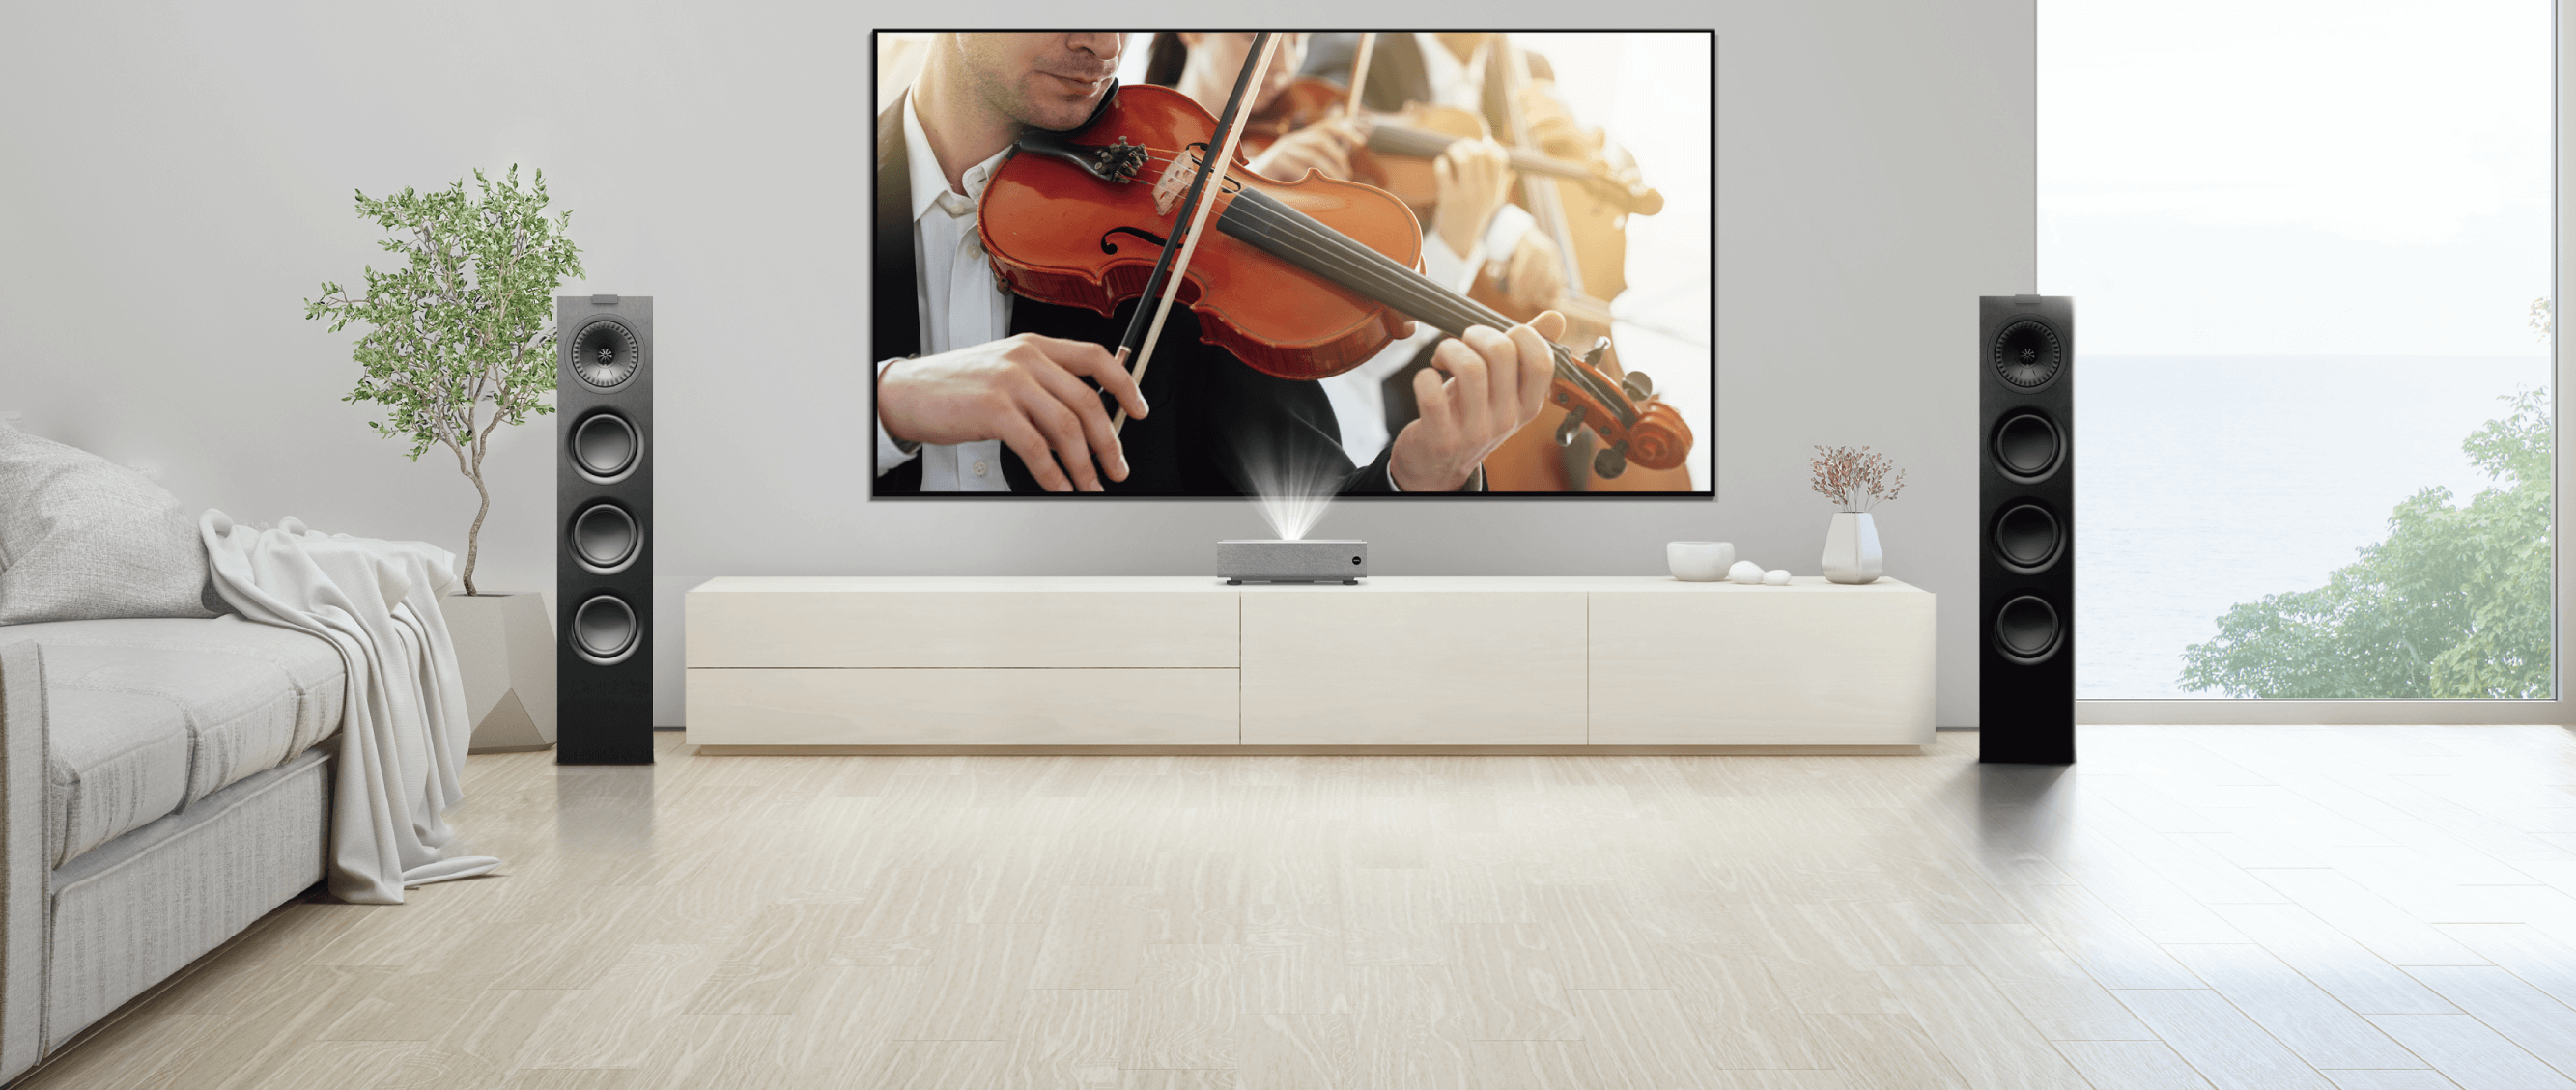 Sunet Surround Home Cinema Pentru o atmosferă cinematografică deosebită, V7000i poate fi conectat la un sistem de sunet extern prin porturi duale HDMI 2.0b şi SPDIF. Indiferent dacă vizionaţi filme, ascultaţi muzică sau că jucaţi, vă puteţi bucura întotdeauna de un sunet deosebit.